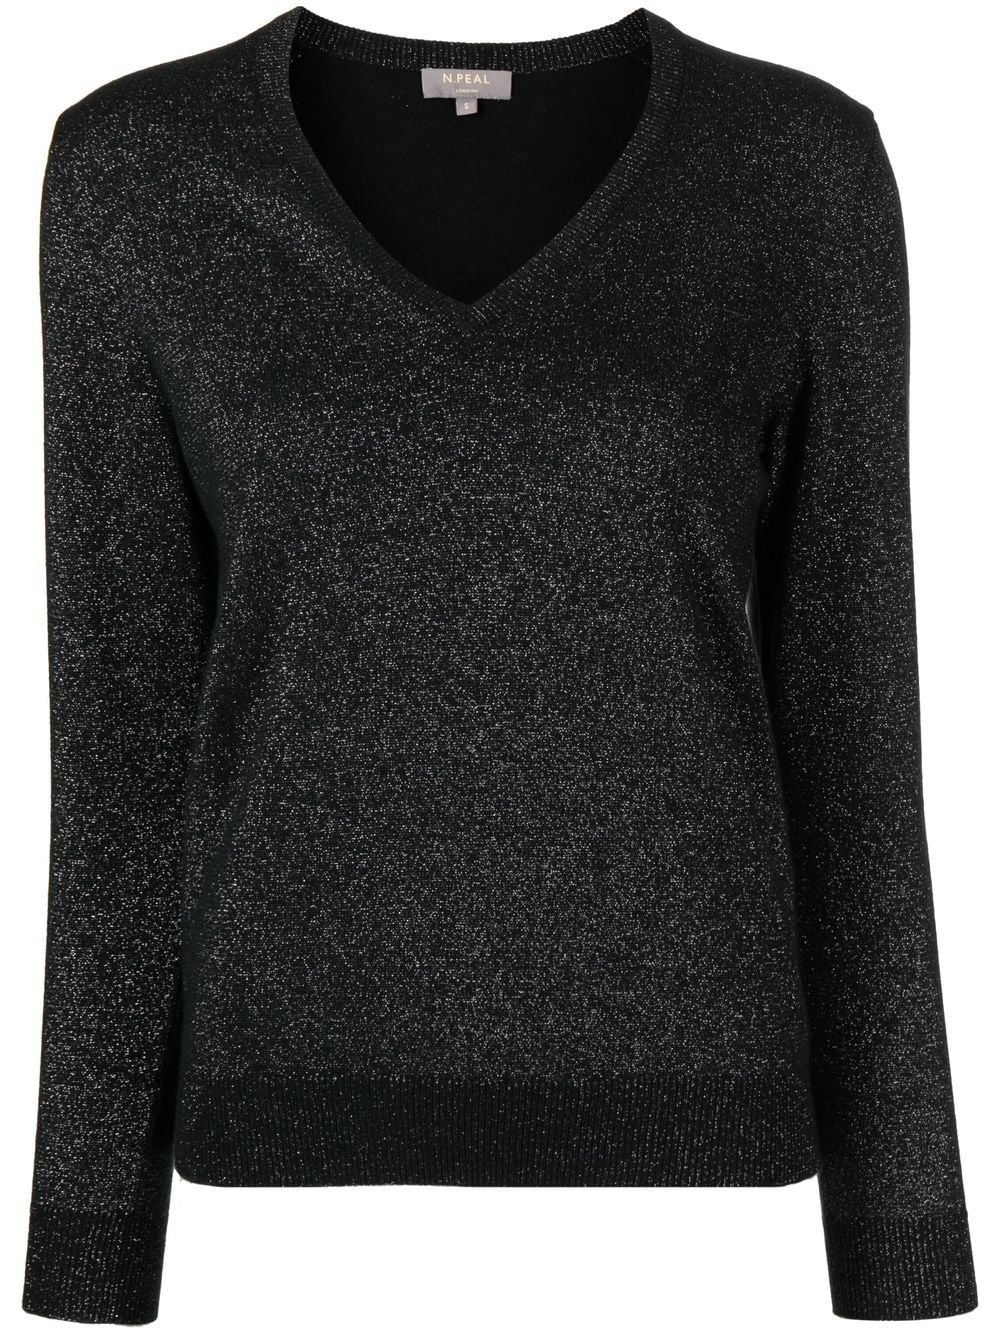 N.Peal sparkle-knit cashmere jumper - Black